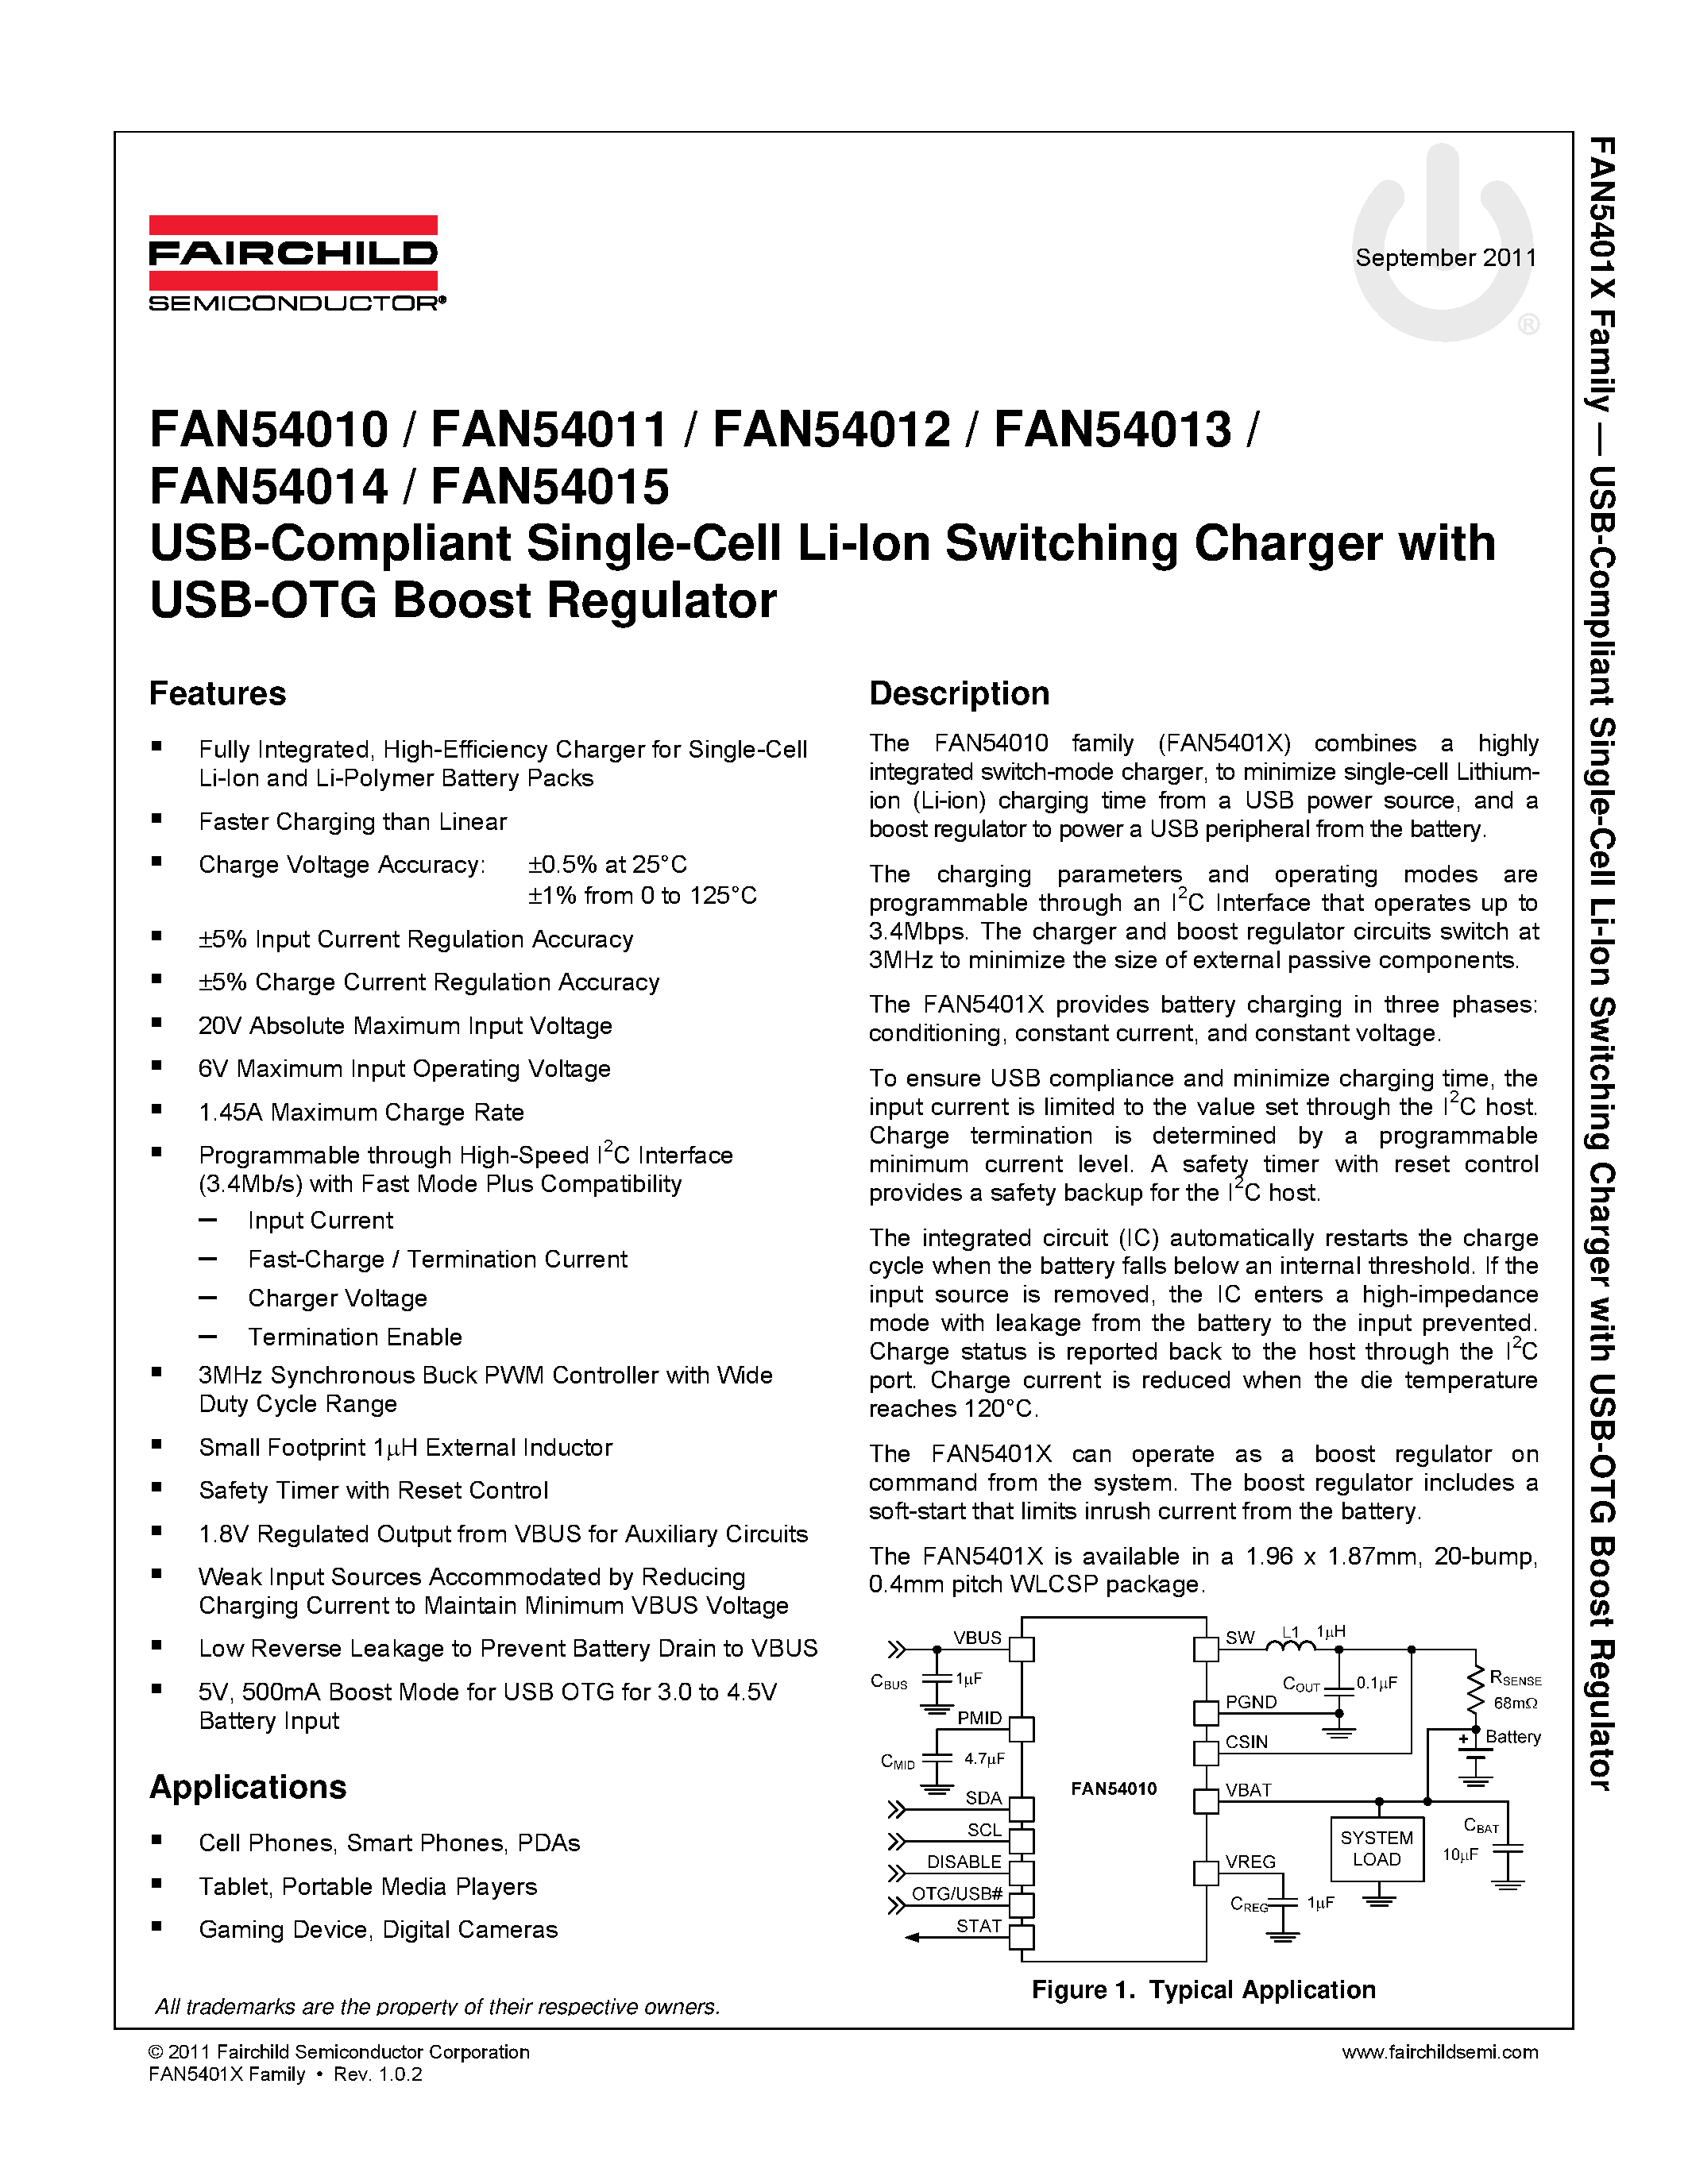 Даташит FAN54010 - (FAN54010 - FAN54015) USB-Compliant Single Cell Li-Ion Switching Charger страница 1